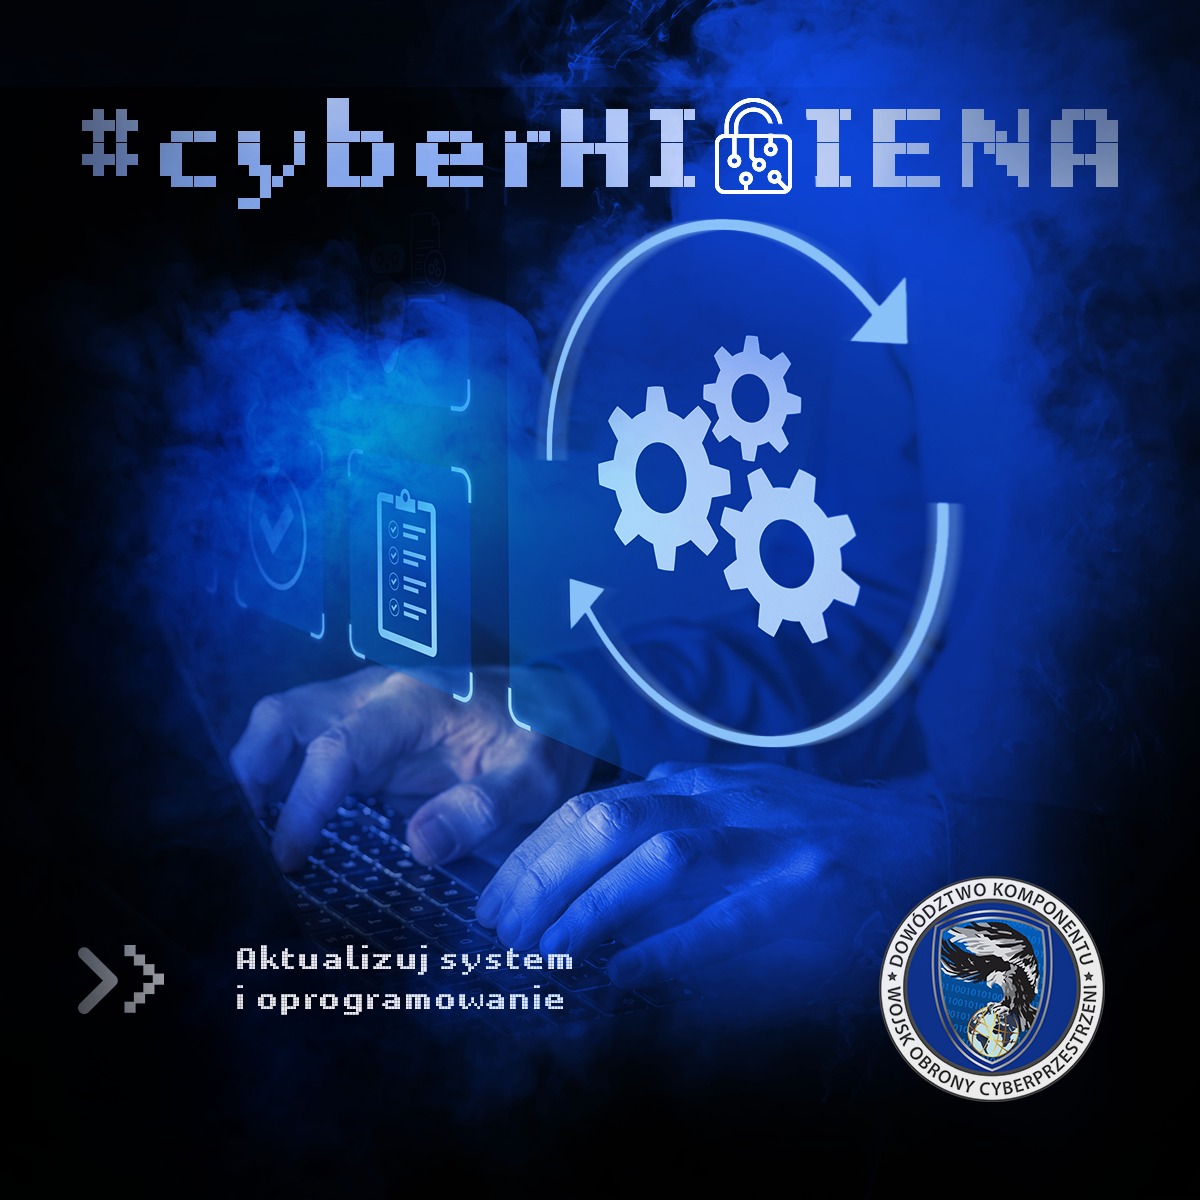 Niezwłocznie instaluj wszystkie dostępne aktualizacje, aby chronić swoje dane i urządzenia przed atakami #cyber. Pamiętaj, że dbanie o bezpieczeństwo swoich systemów to priorytet, dlatego bądź odpowiedzialny i regularnie aktualizuj swoje oprogramowanie!